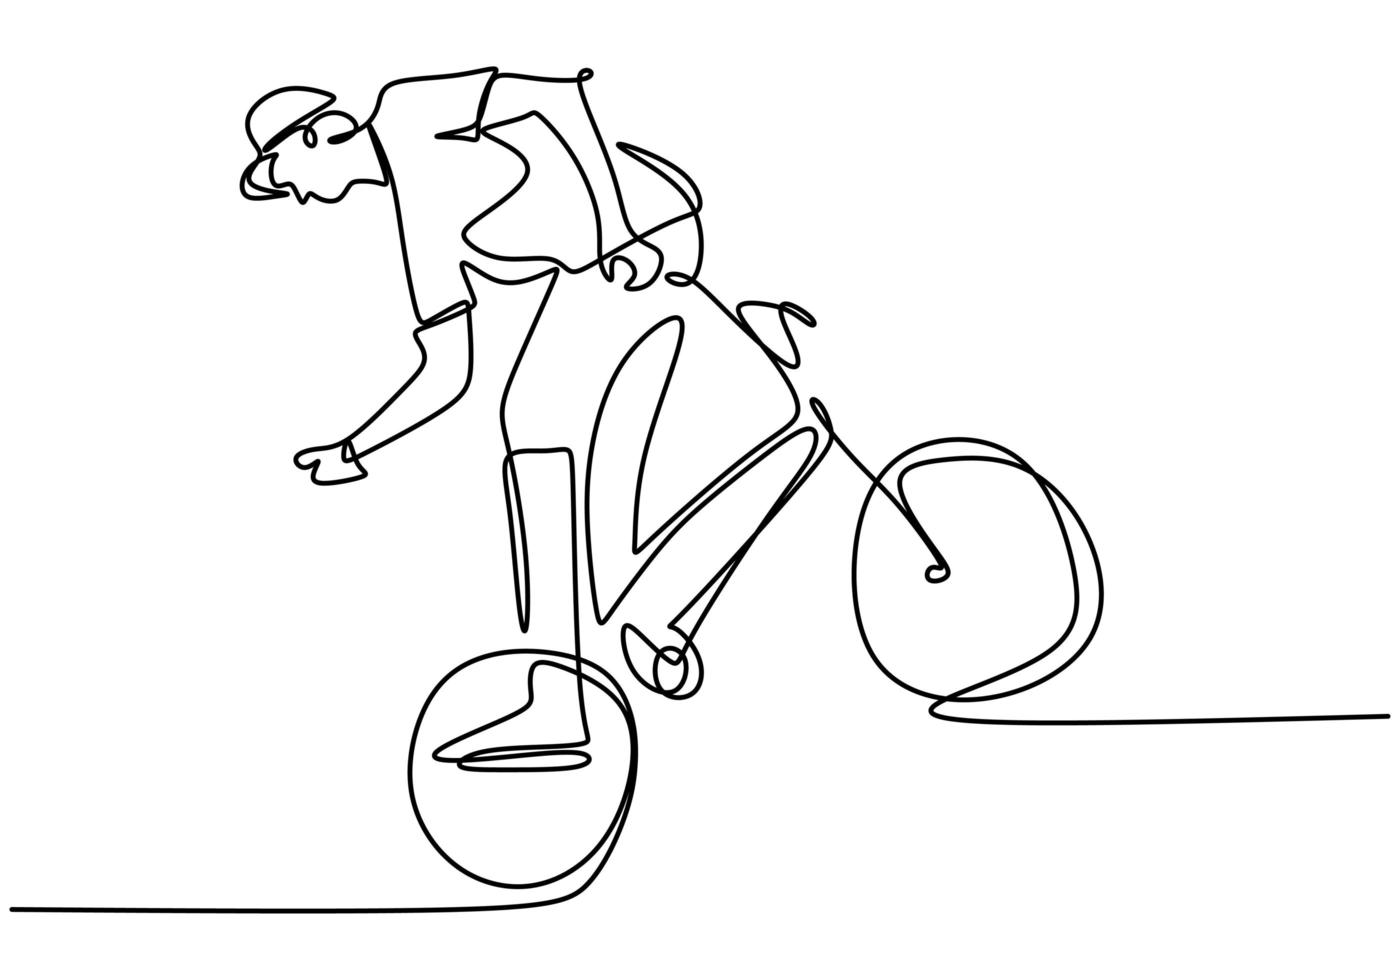 Einzelne durchgehende Strichzeichnung des jungen Radfahrers zeigt Freestyle-Stand auf einem Fahrrad. extrem riskanter Trick. eine Linie zeichnen Design Vektor-Illustration für Freestyle vektor